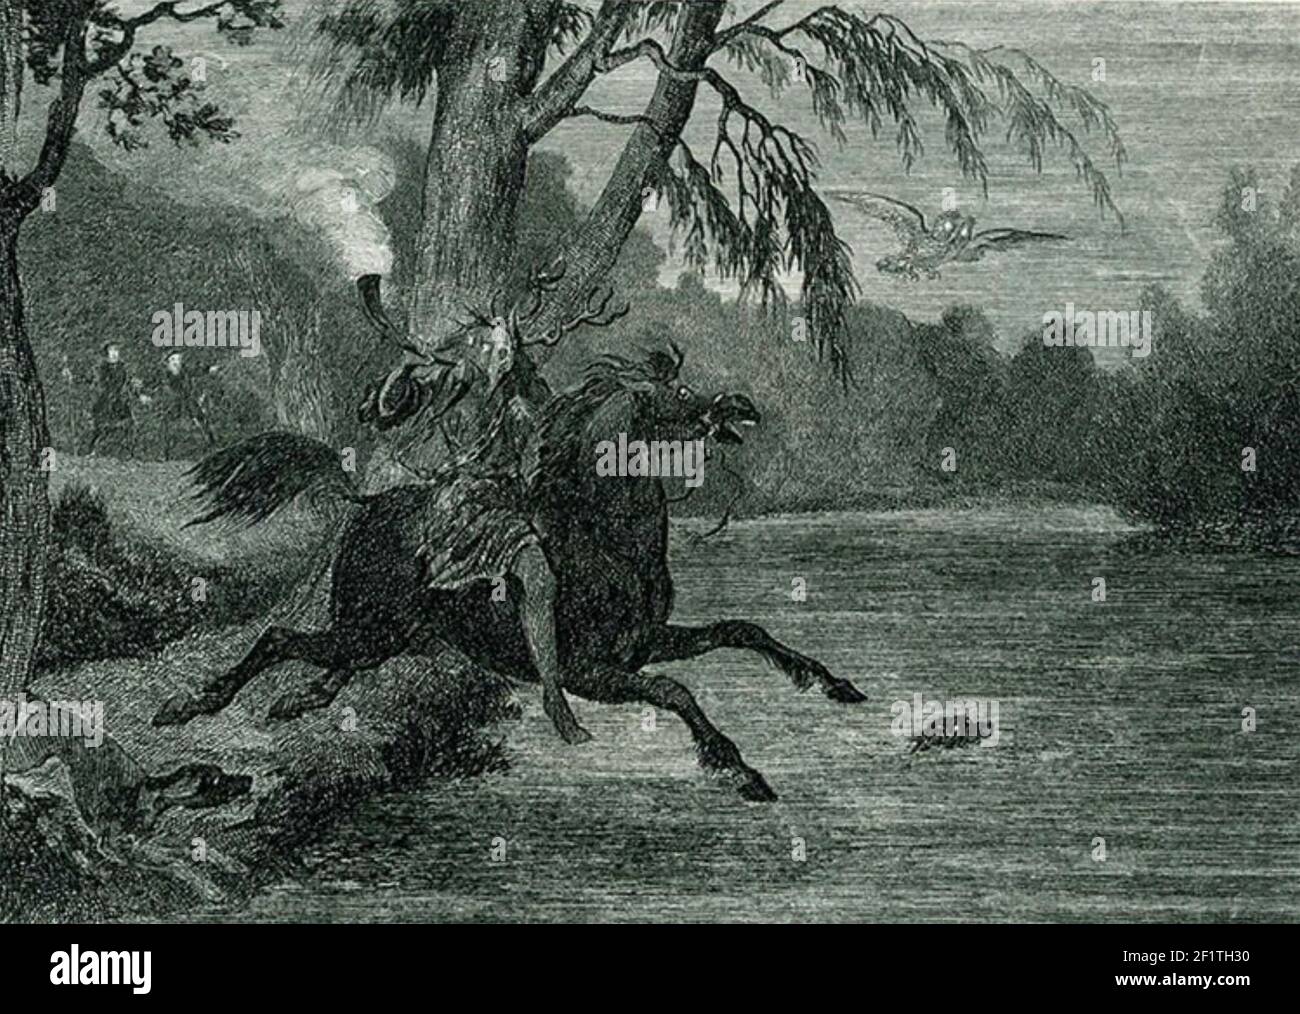 HERNE EL FANTASMA del folklore inglés HUNTER que acecha el bosque de Windsor con sus hounds y un búho. Grabado alrededor de 1843 por George Cruikshank sho9ws Herne siendo observado por el duque de Richmond y el conde de Surrey. Foto de stock